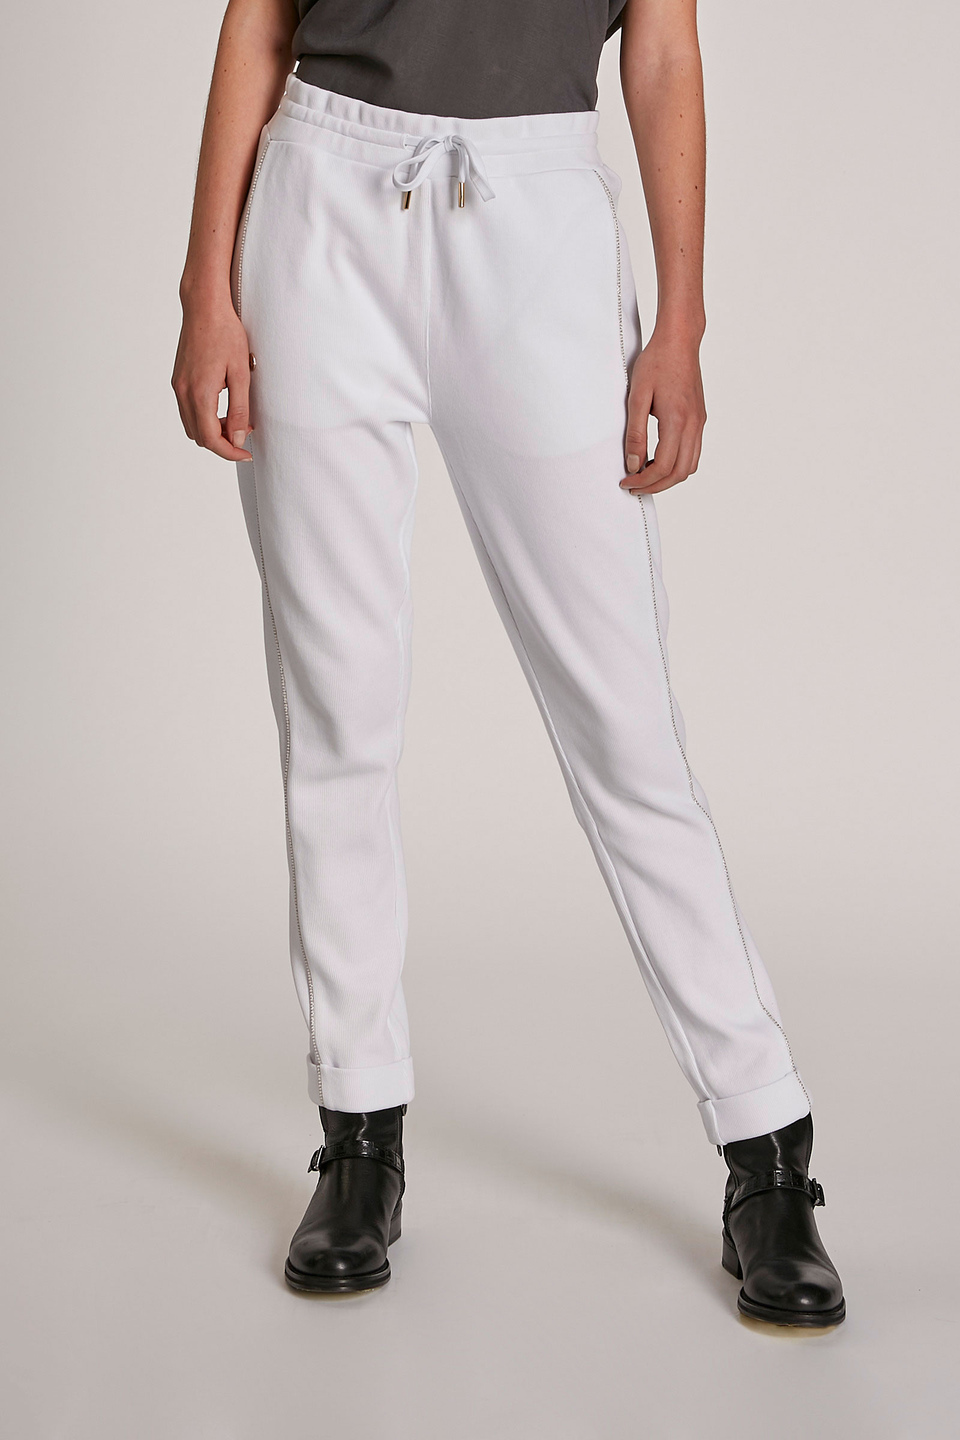 Pantalón de mujer de algodón, corte regular Blanco Óptico La Martina | Shop  Online